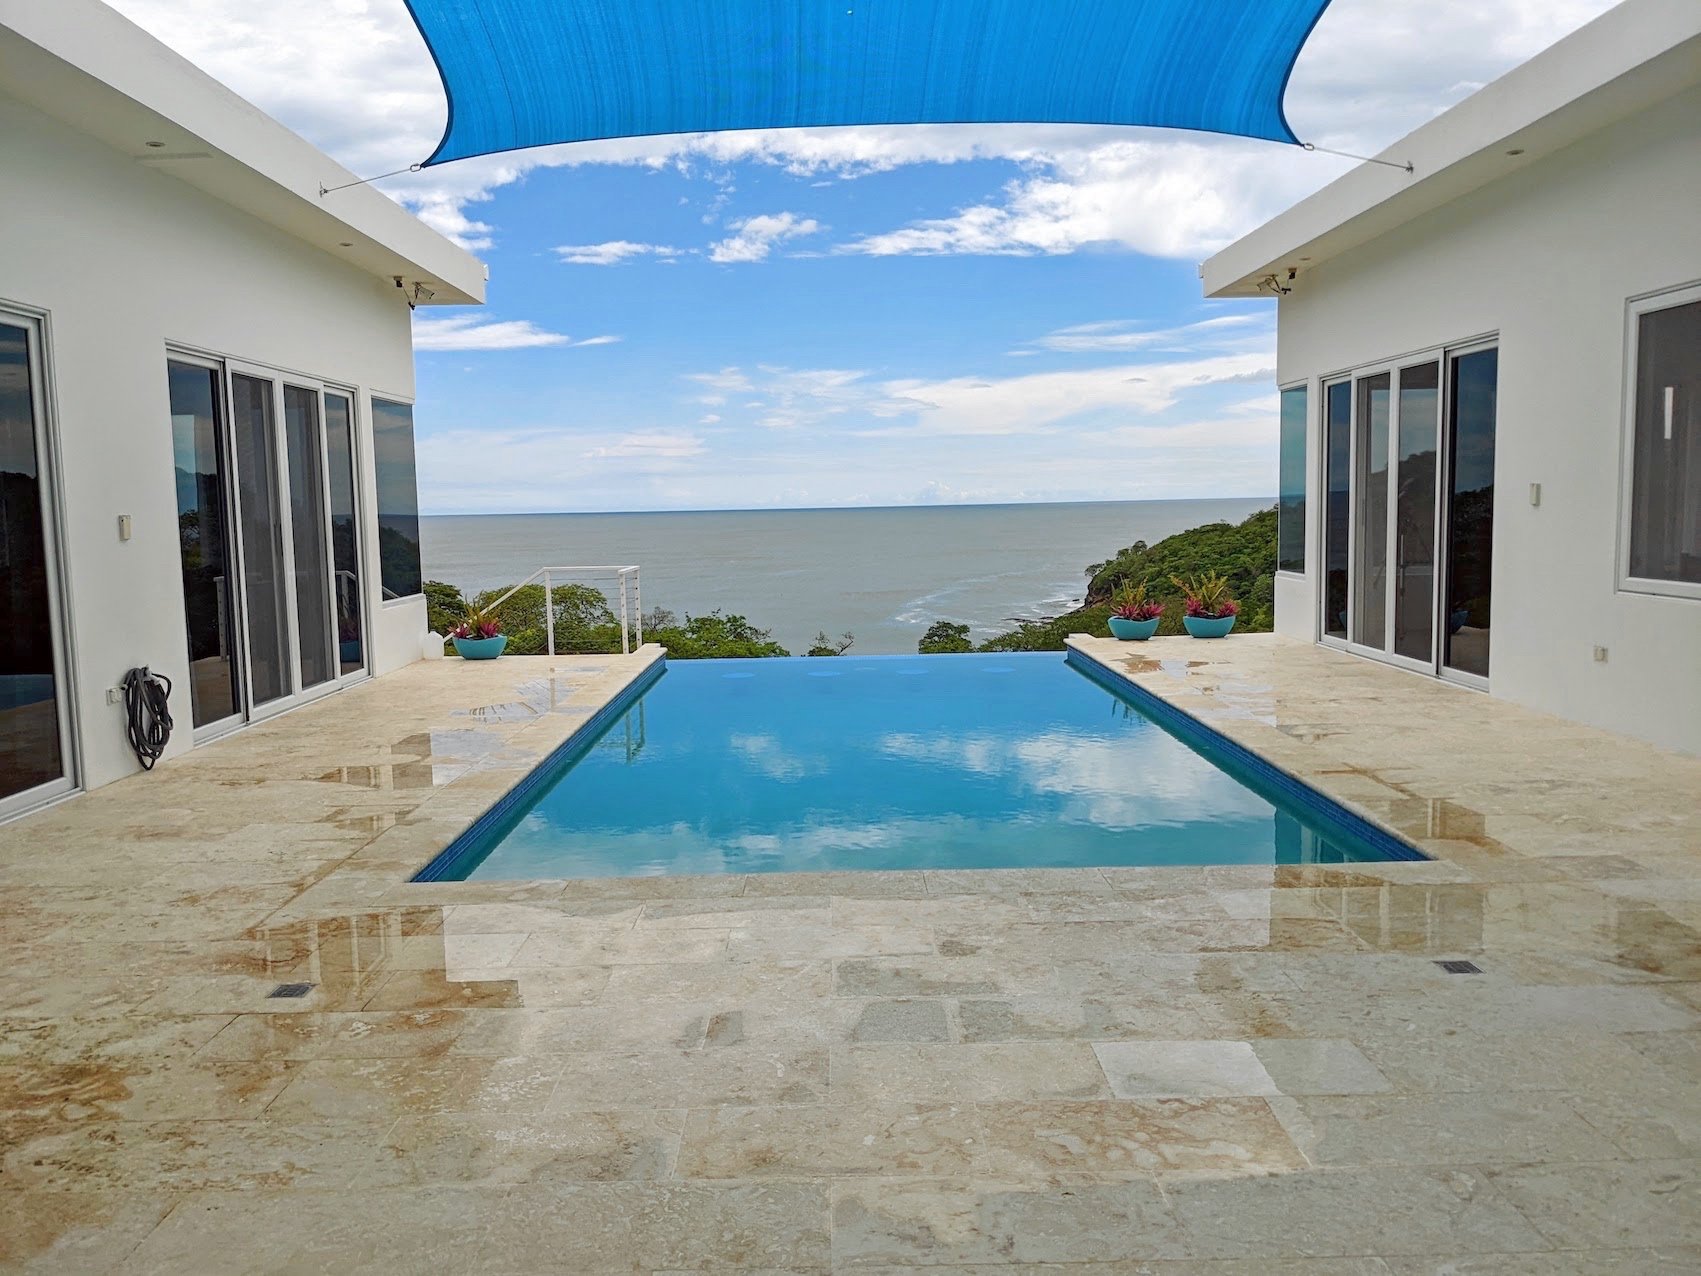 Home For Sale San Juan Del Sur Nicaragua Real Estate 29.jpg